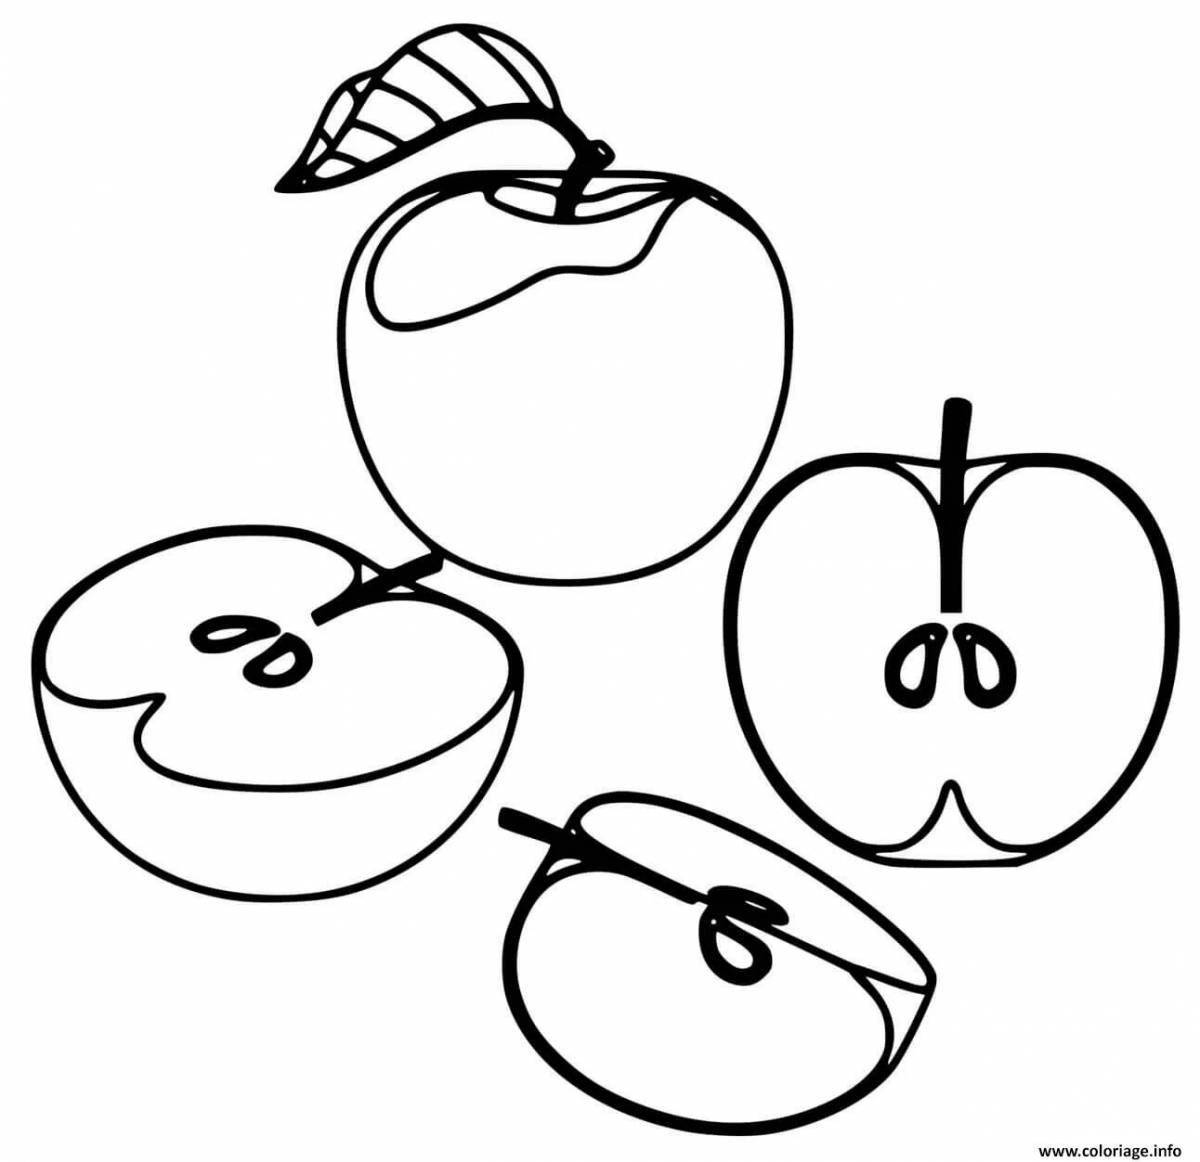 Fun apple drawing for kids